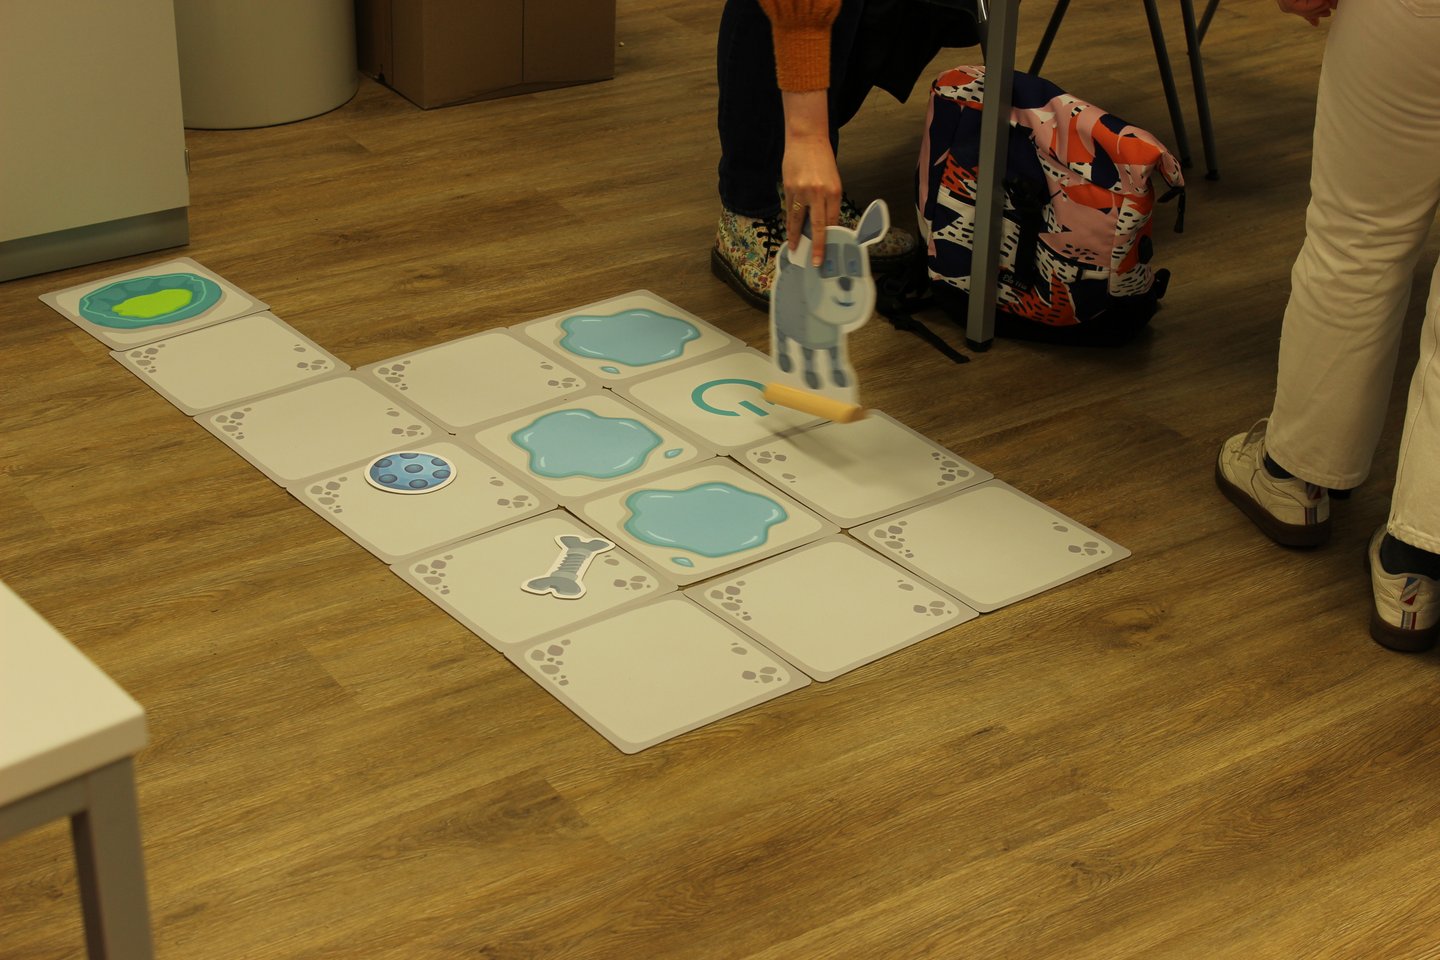 Es handelt sich um ein Lernspiel auf dem Fußboden. Große Karten auf dem Boden stellen Pfützen, Startposition, Hundekorb und normale Schrittflächen da. Auf einer Karte liegt ein Knochen, auf einer ein Ball. Eine Person bewegt eine große Hundefigur entlang der Karten.